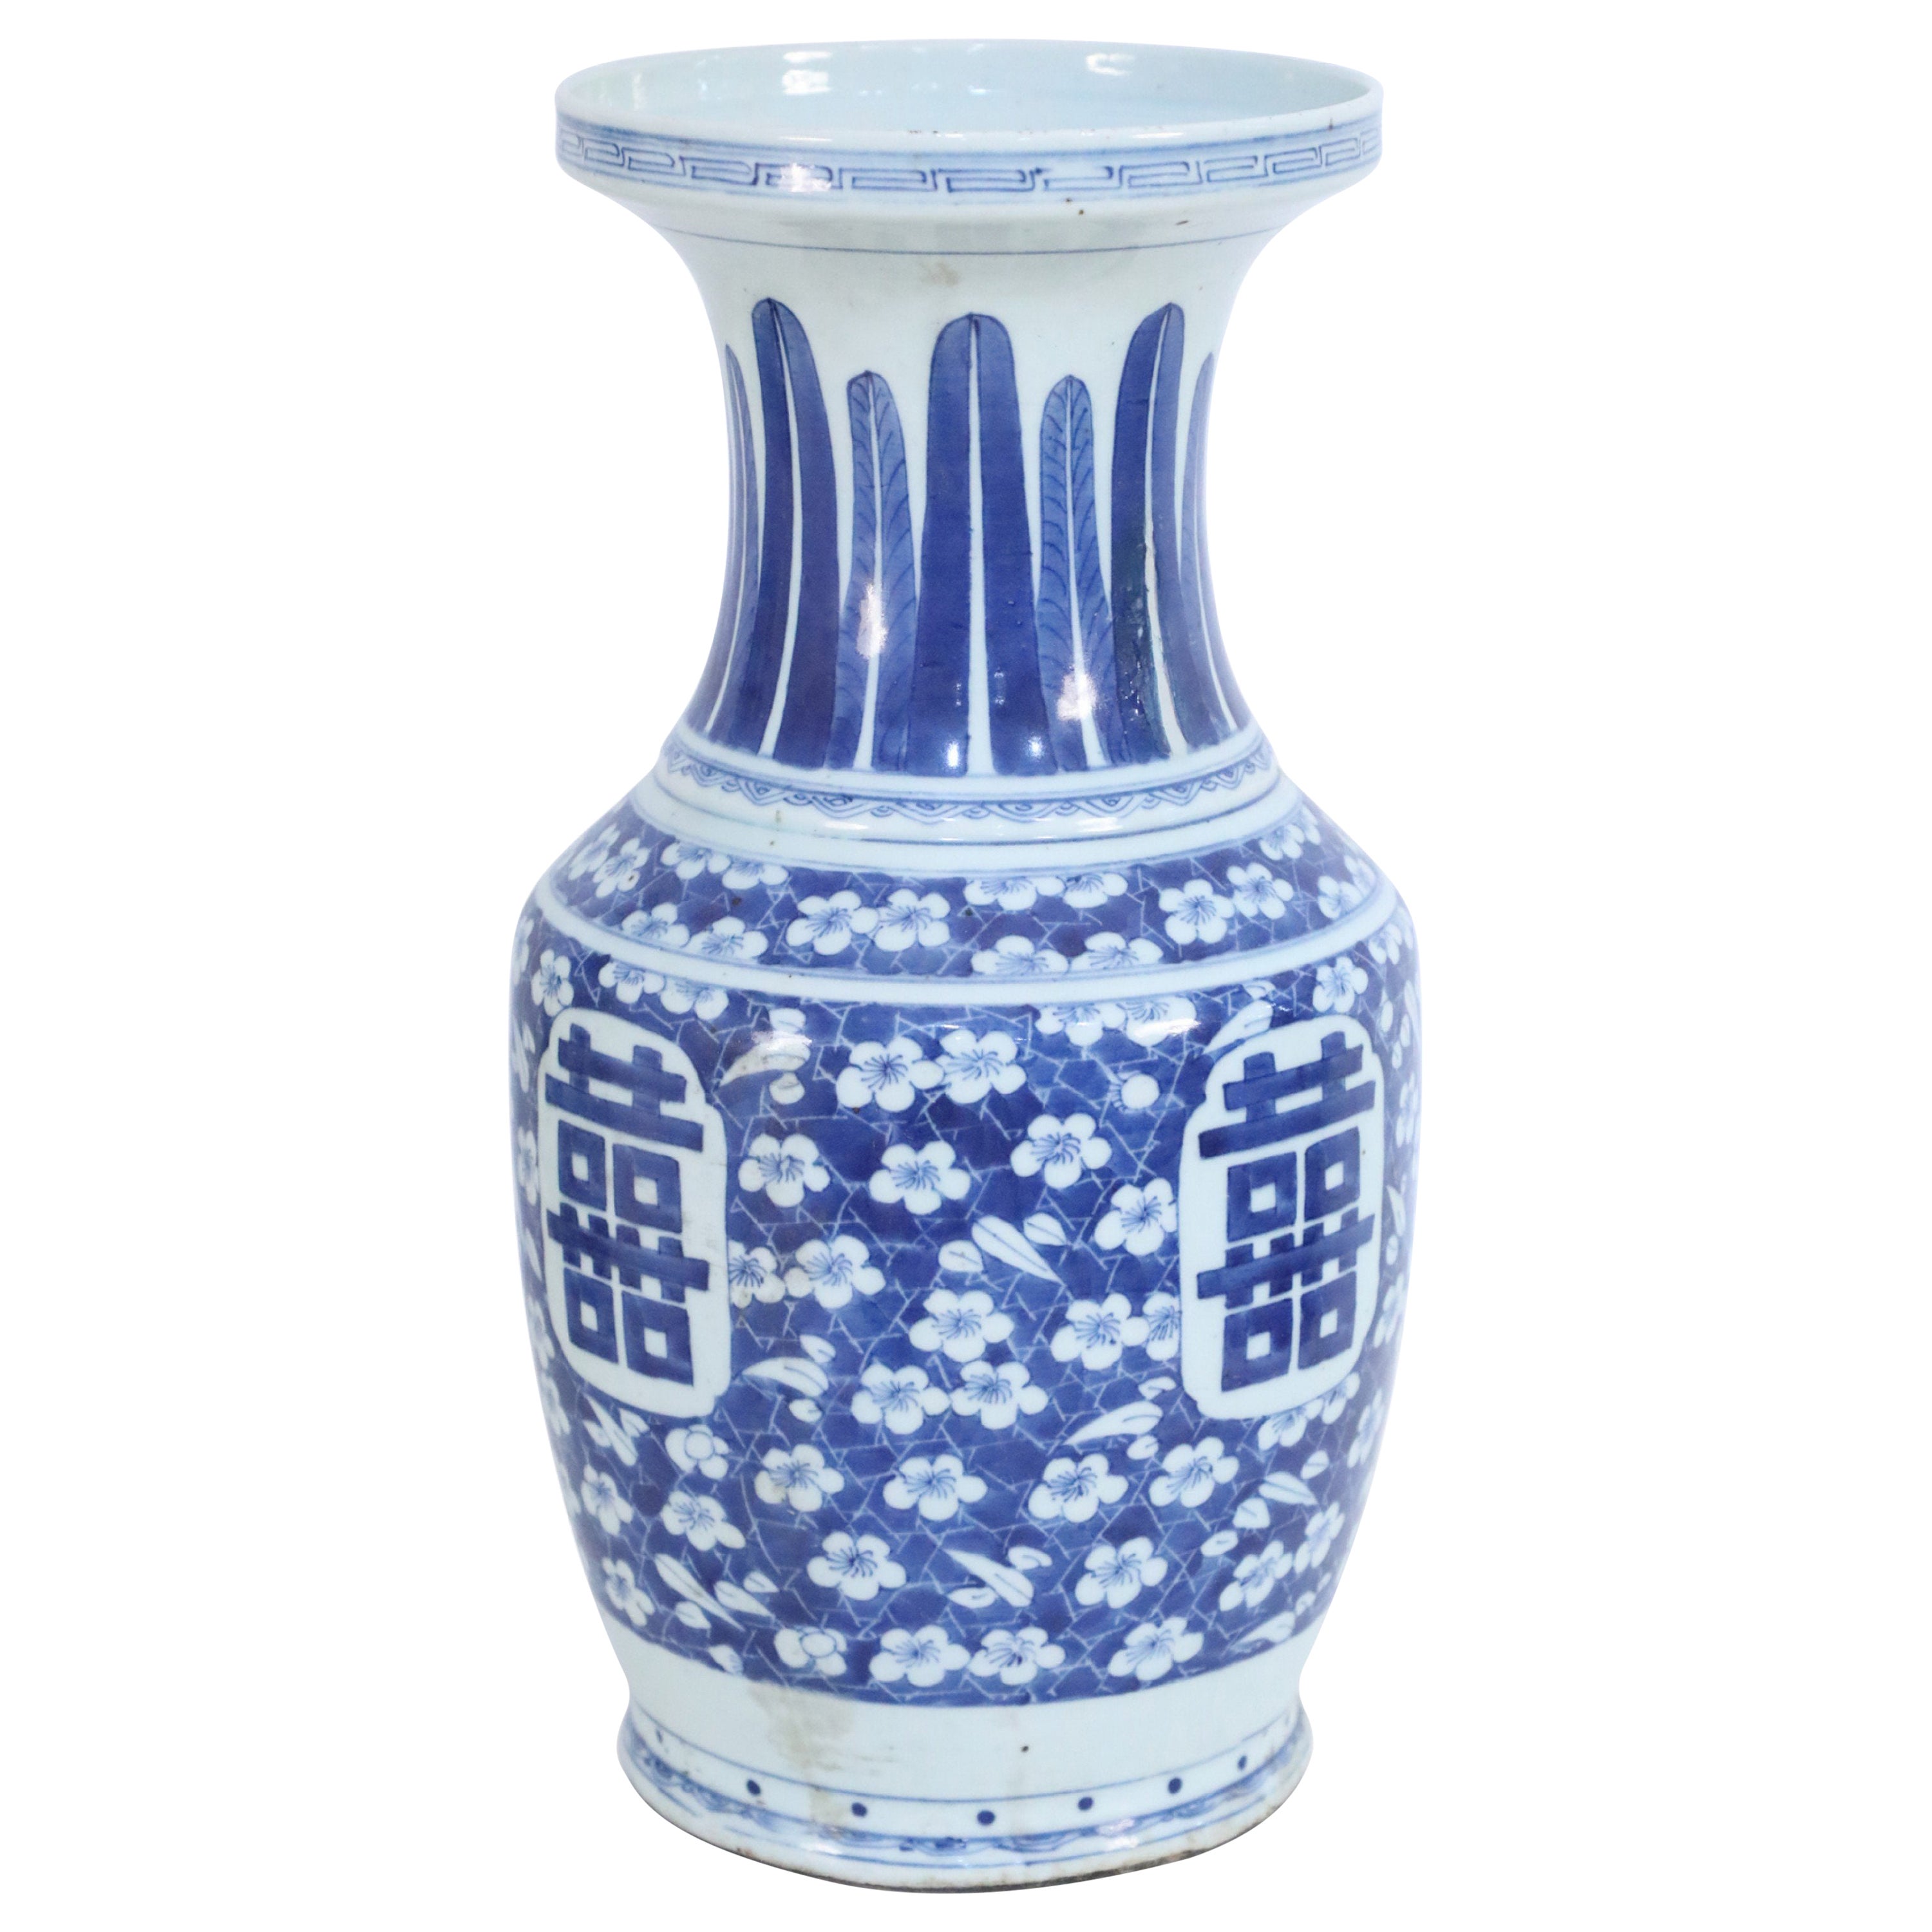 Chinesische Porzellanurne mit weißen und blauen Federn und Blumenmotiven, Chinesisch